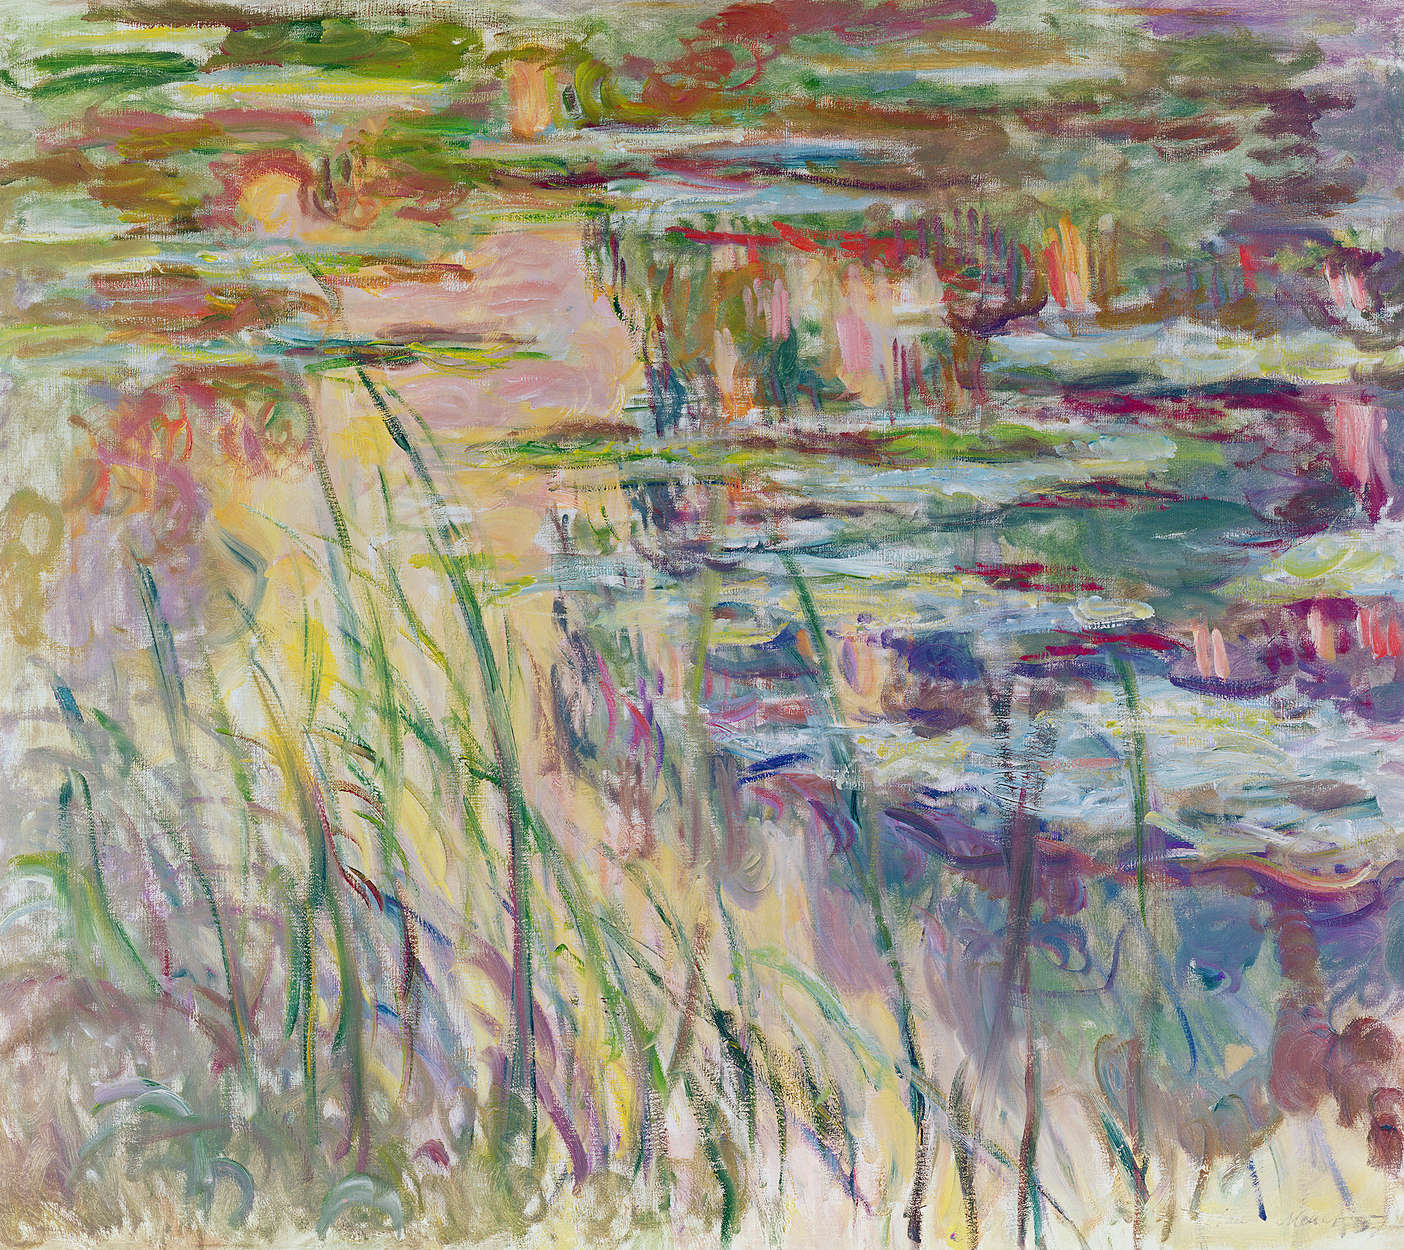             Mural "Reflejos en el agua" de Claude Monet
        